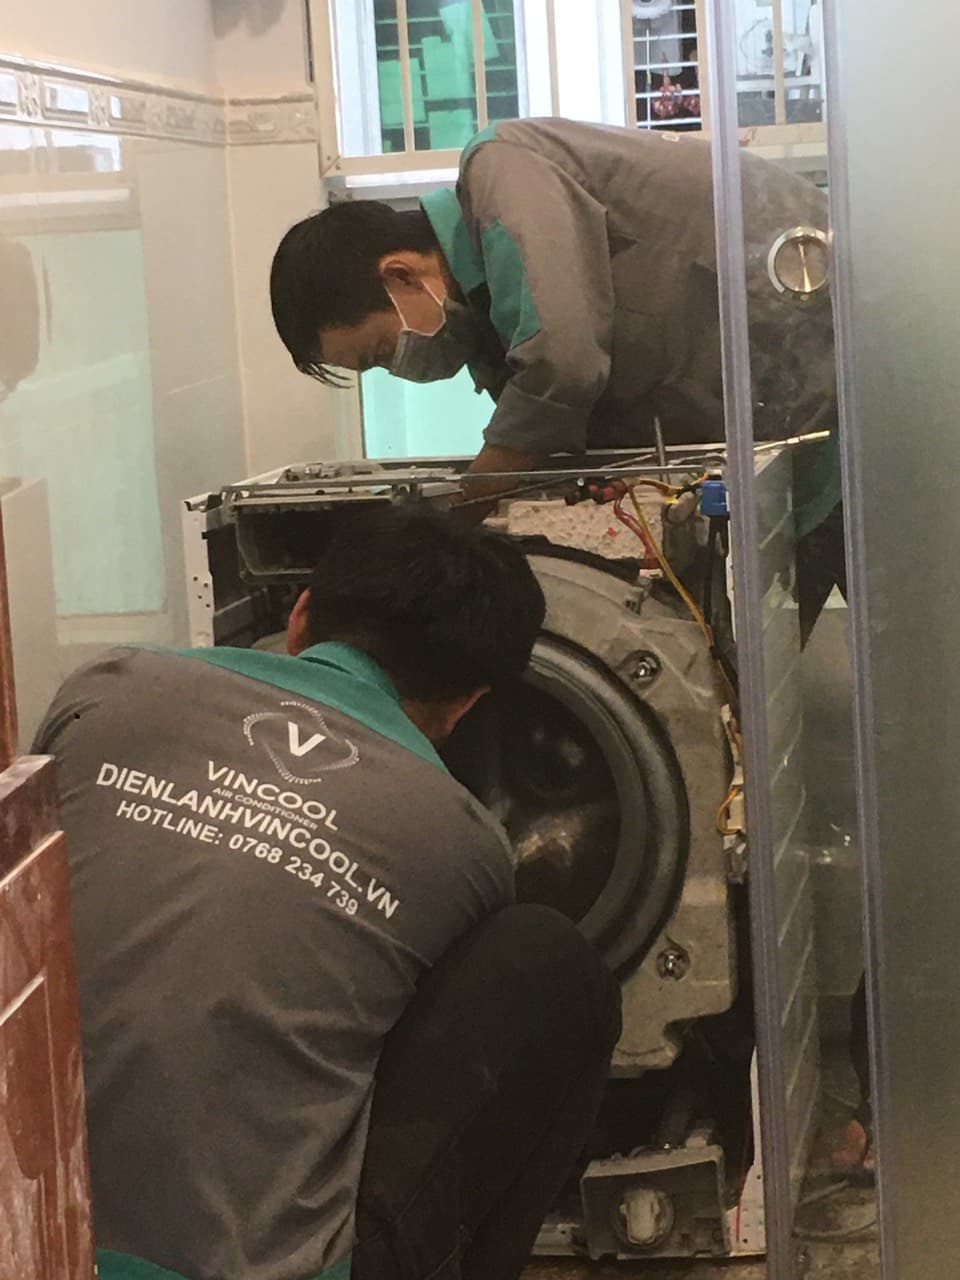 Vincool nhận vệ sinh máy giặt quận Tân Phú cả máy cửa trên và máy cửa ngang, với đa dạng các hãng máy giặt